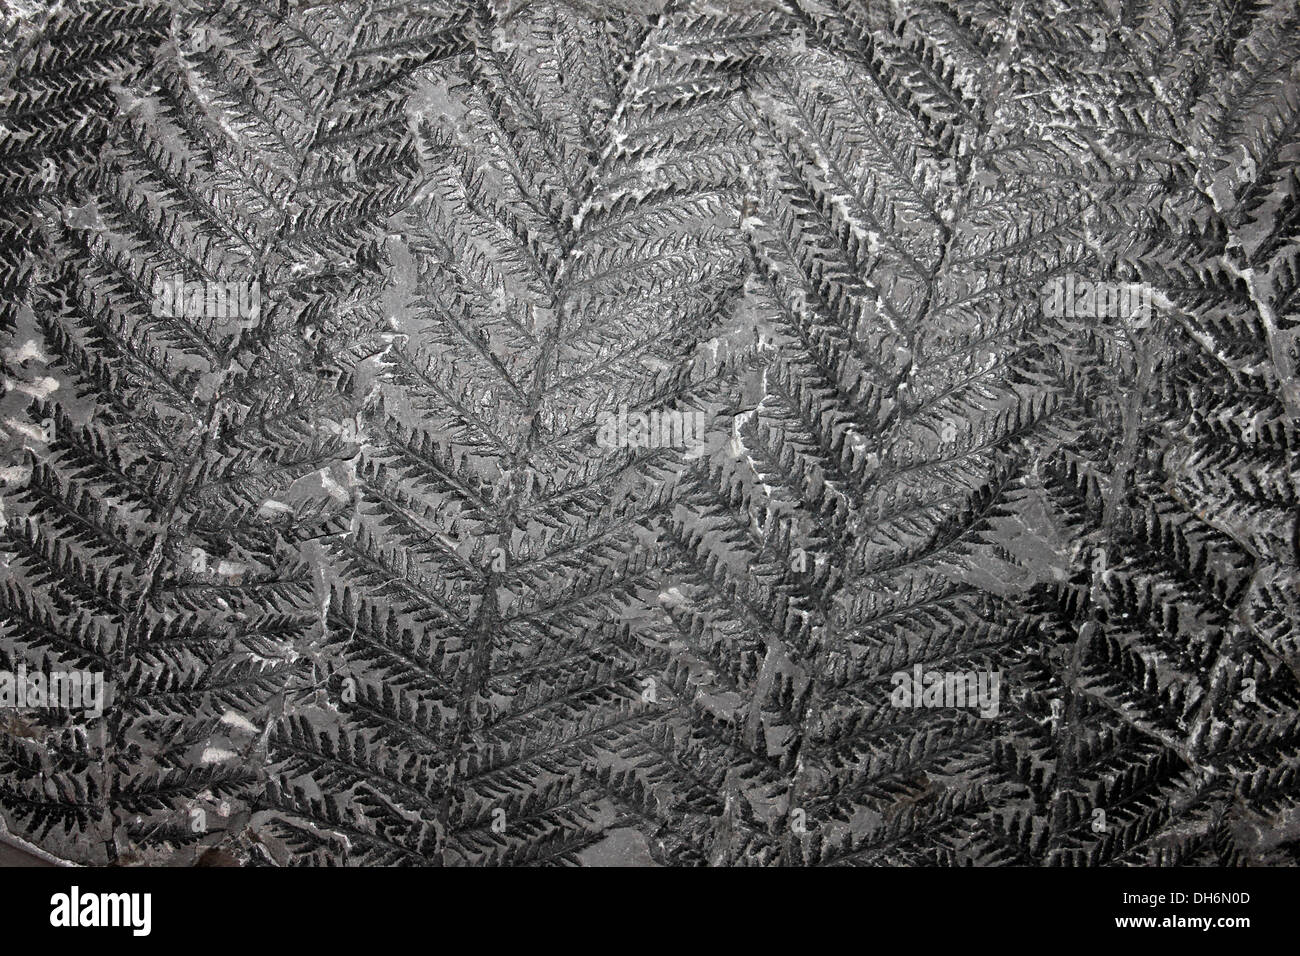 Fougère fossile Senftenbergia plumosa Carbonifère supérieur, Burnley, Lancashire UK Banque D'Images